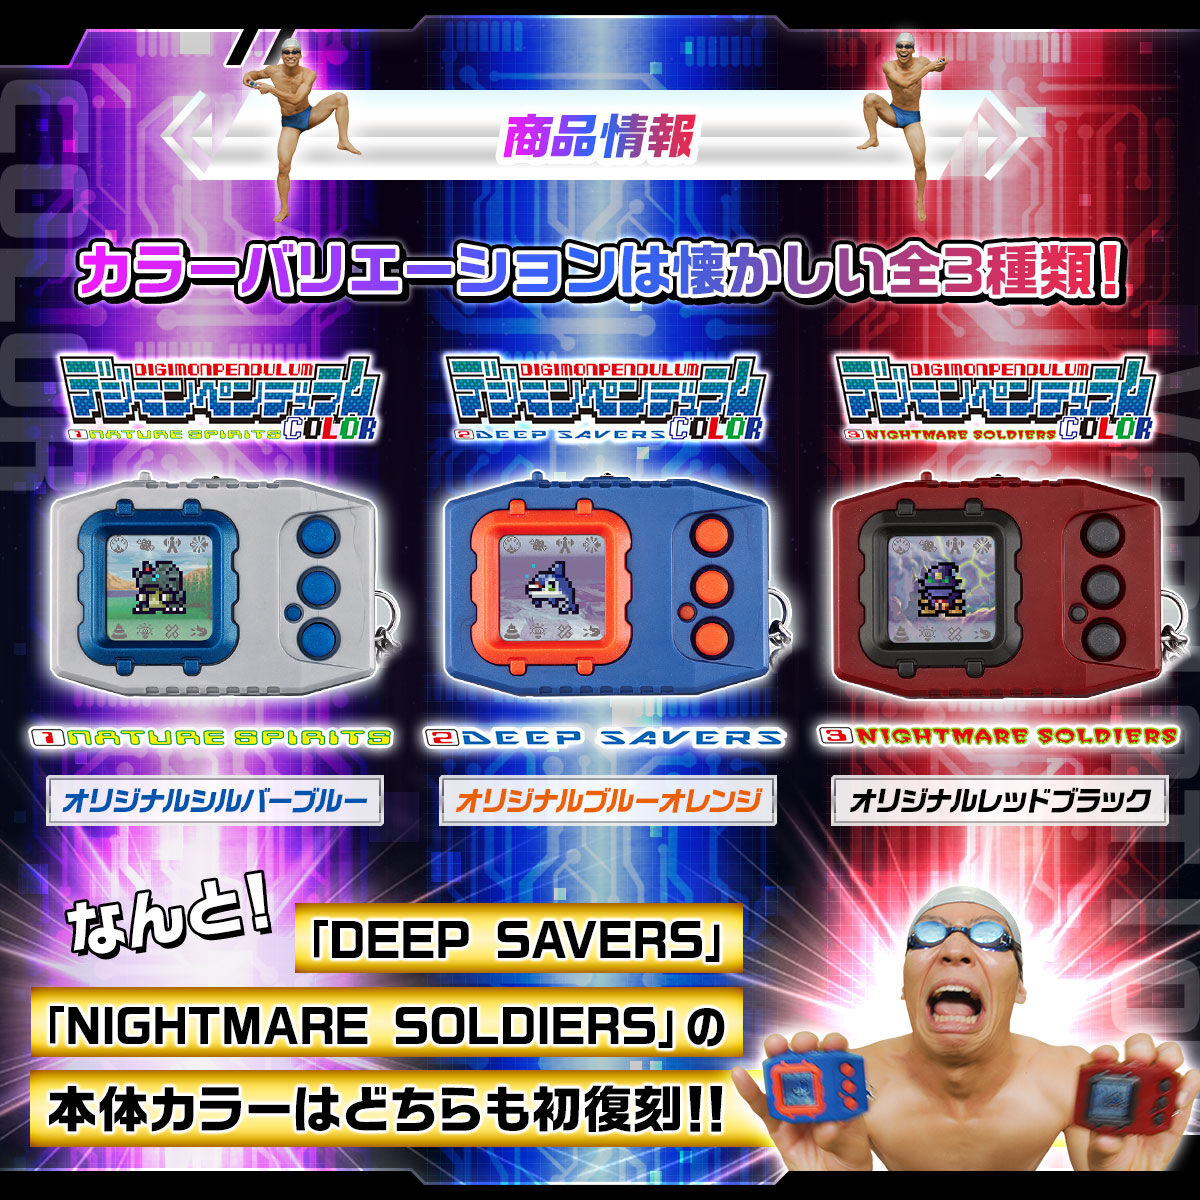 แอ็คชั่นฟิกเกอร์ Bandai Digital Monster Digimon Pendulum Color Set of 3 (1 NATURE SPIRITS/2 DEEP SAVERS /3 NIGHTMARE SOLDIERS)